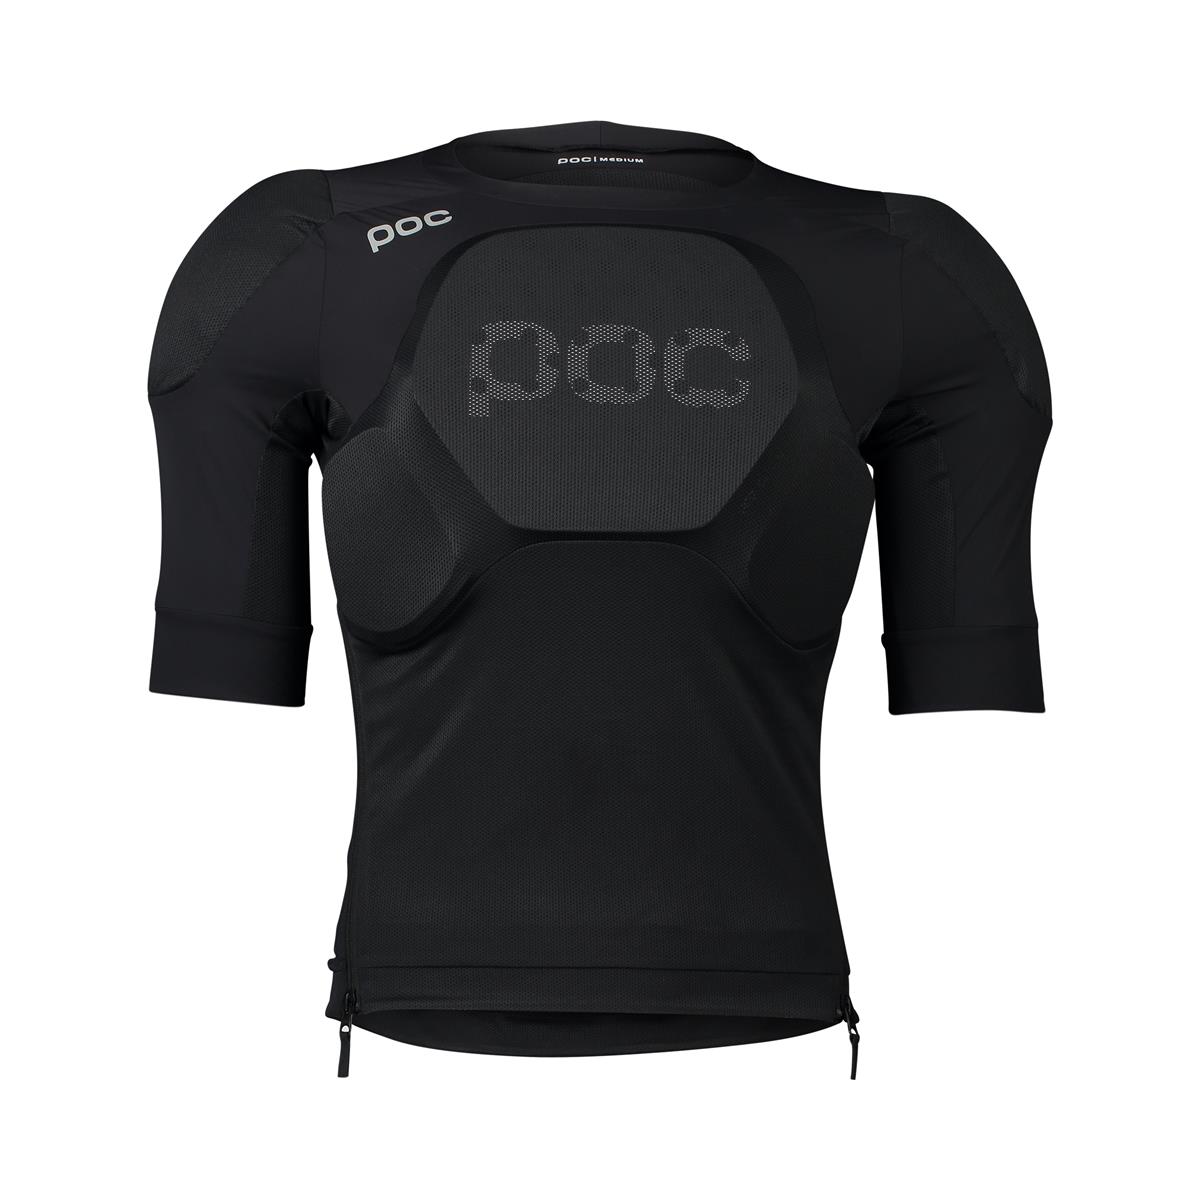 Camiseta Armor Oseus VPD negra talla L